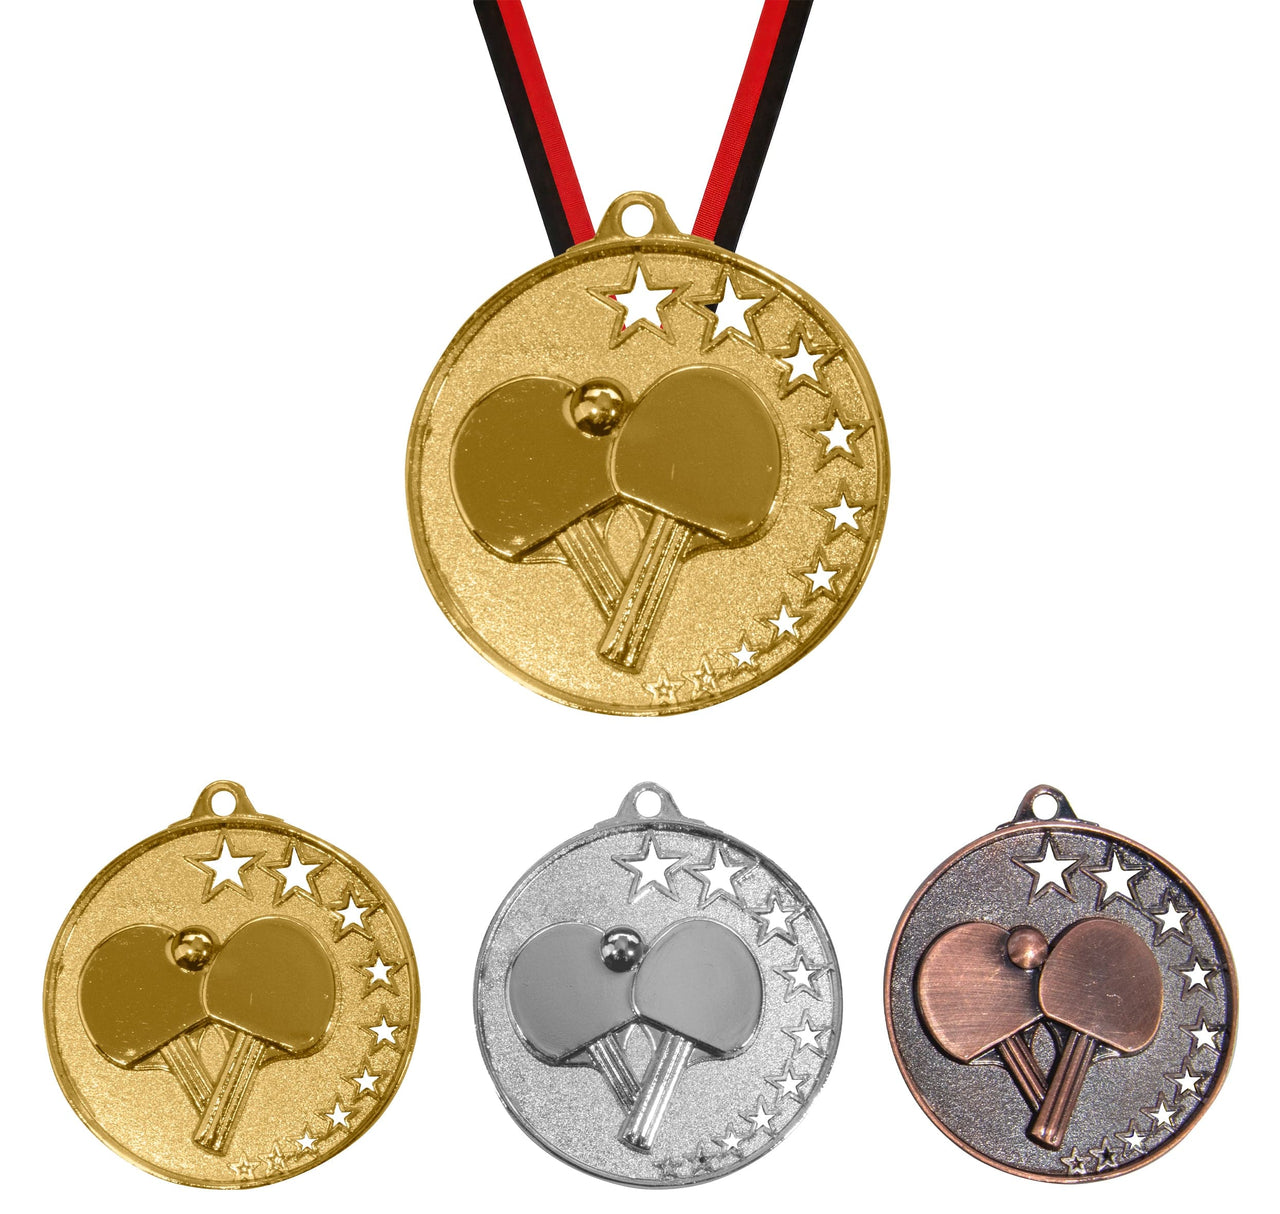 Eine Auszeichnung aus gold-, silber- und bronzefarbenen Tischtennis-Medaillen mit Bändern der Marke POMEKI.